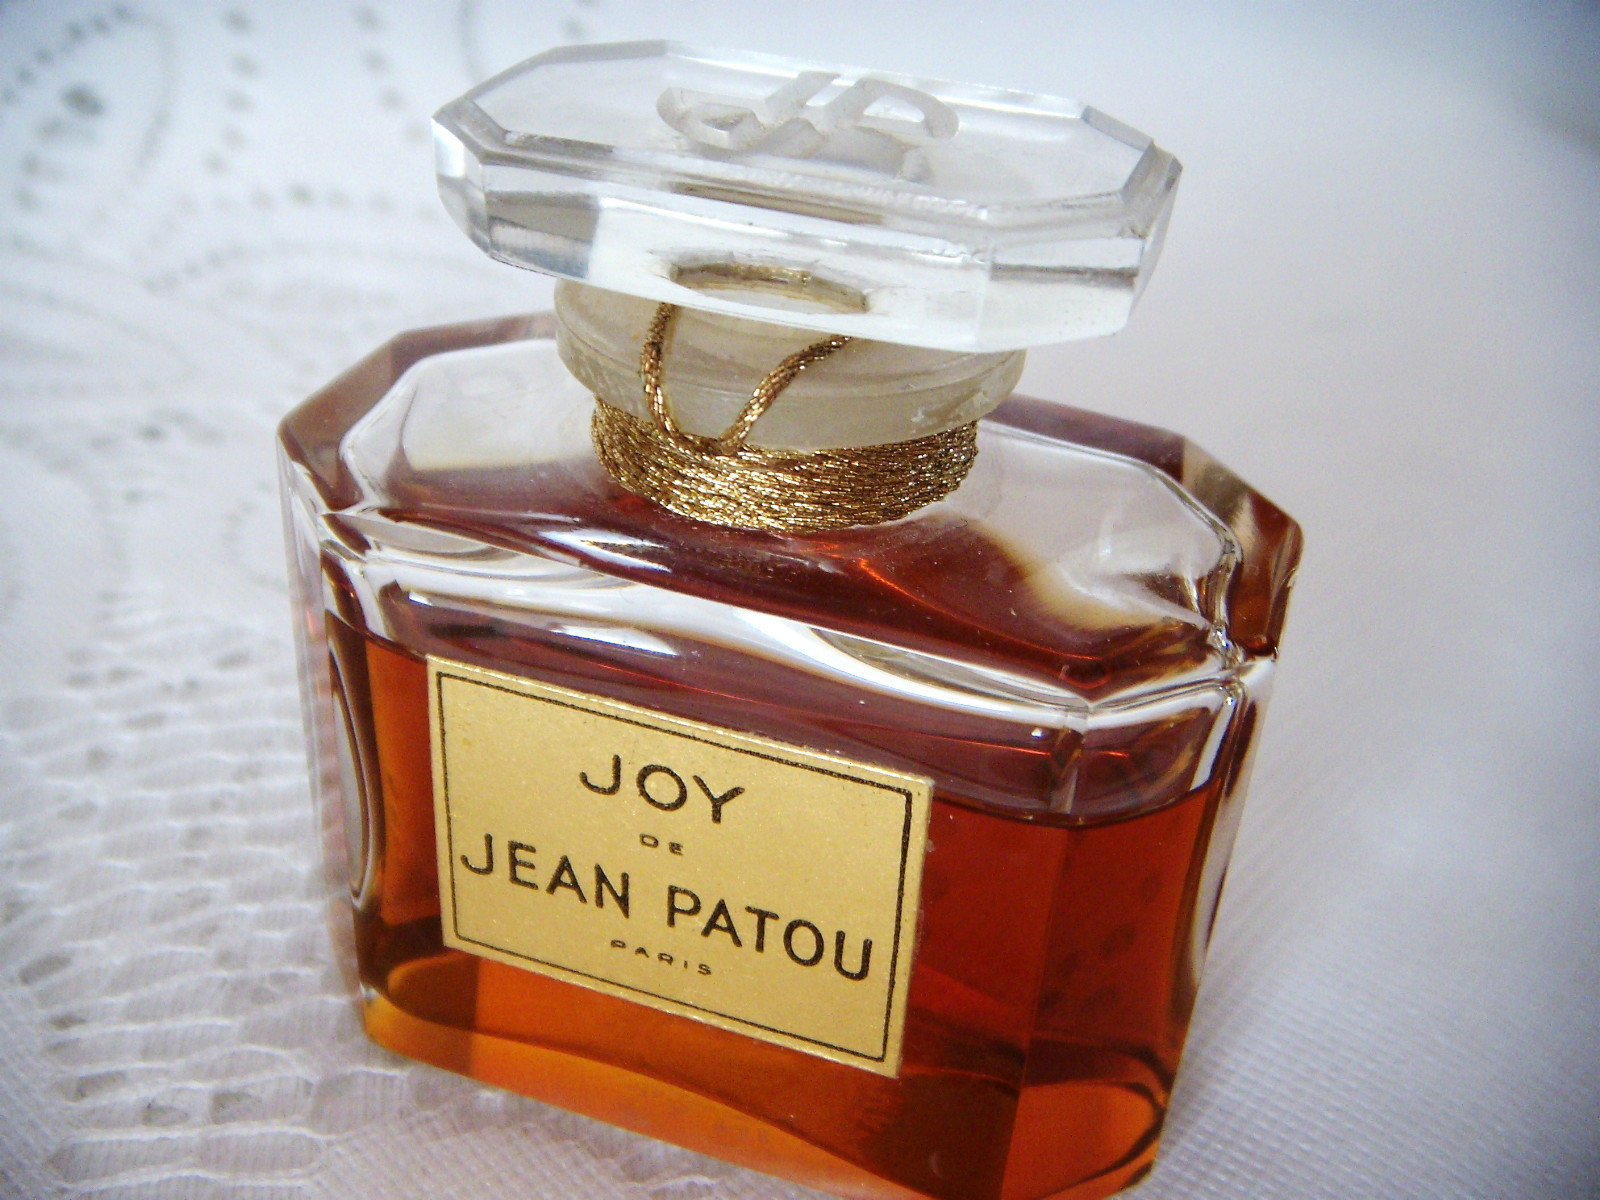 Топовый парфюм. Joy от Jean Patou. Джой Пату духи.